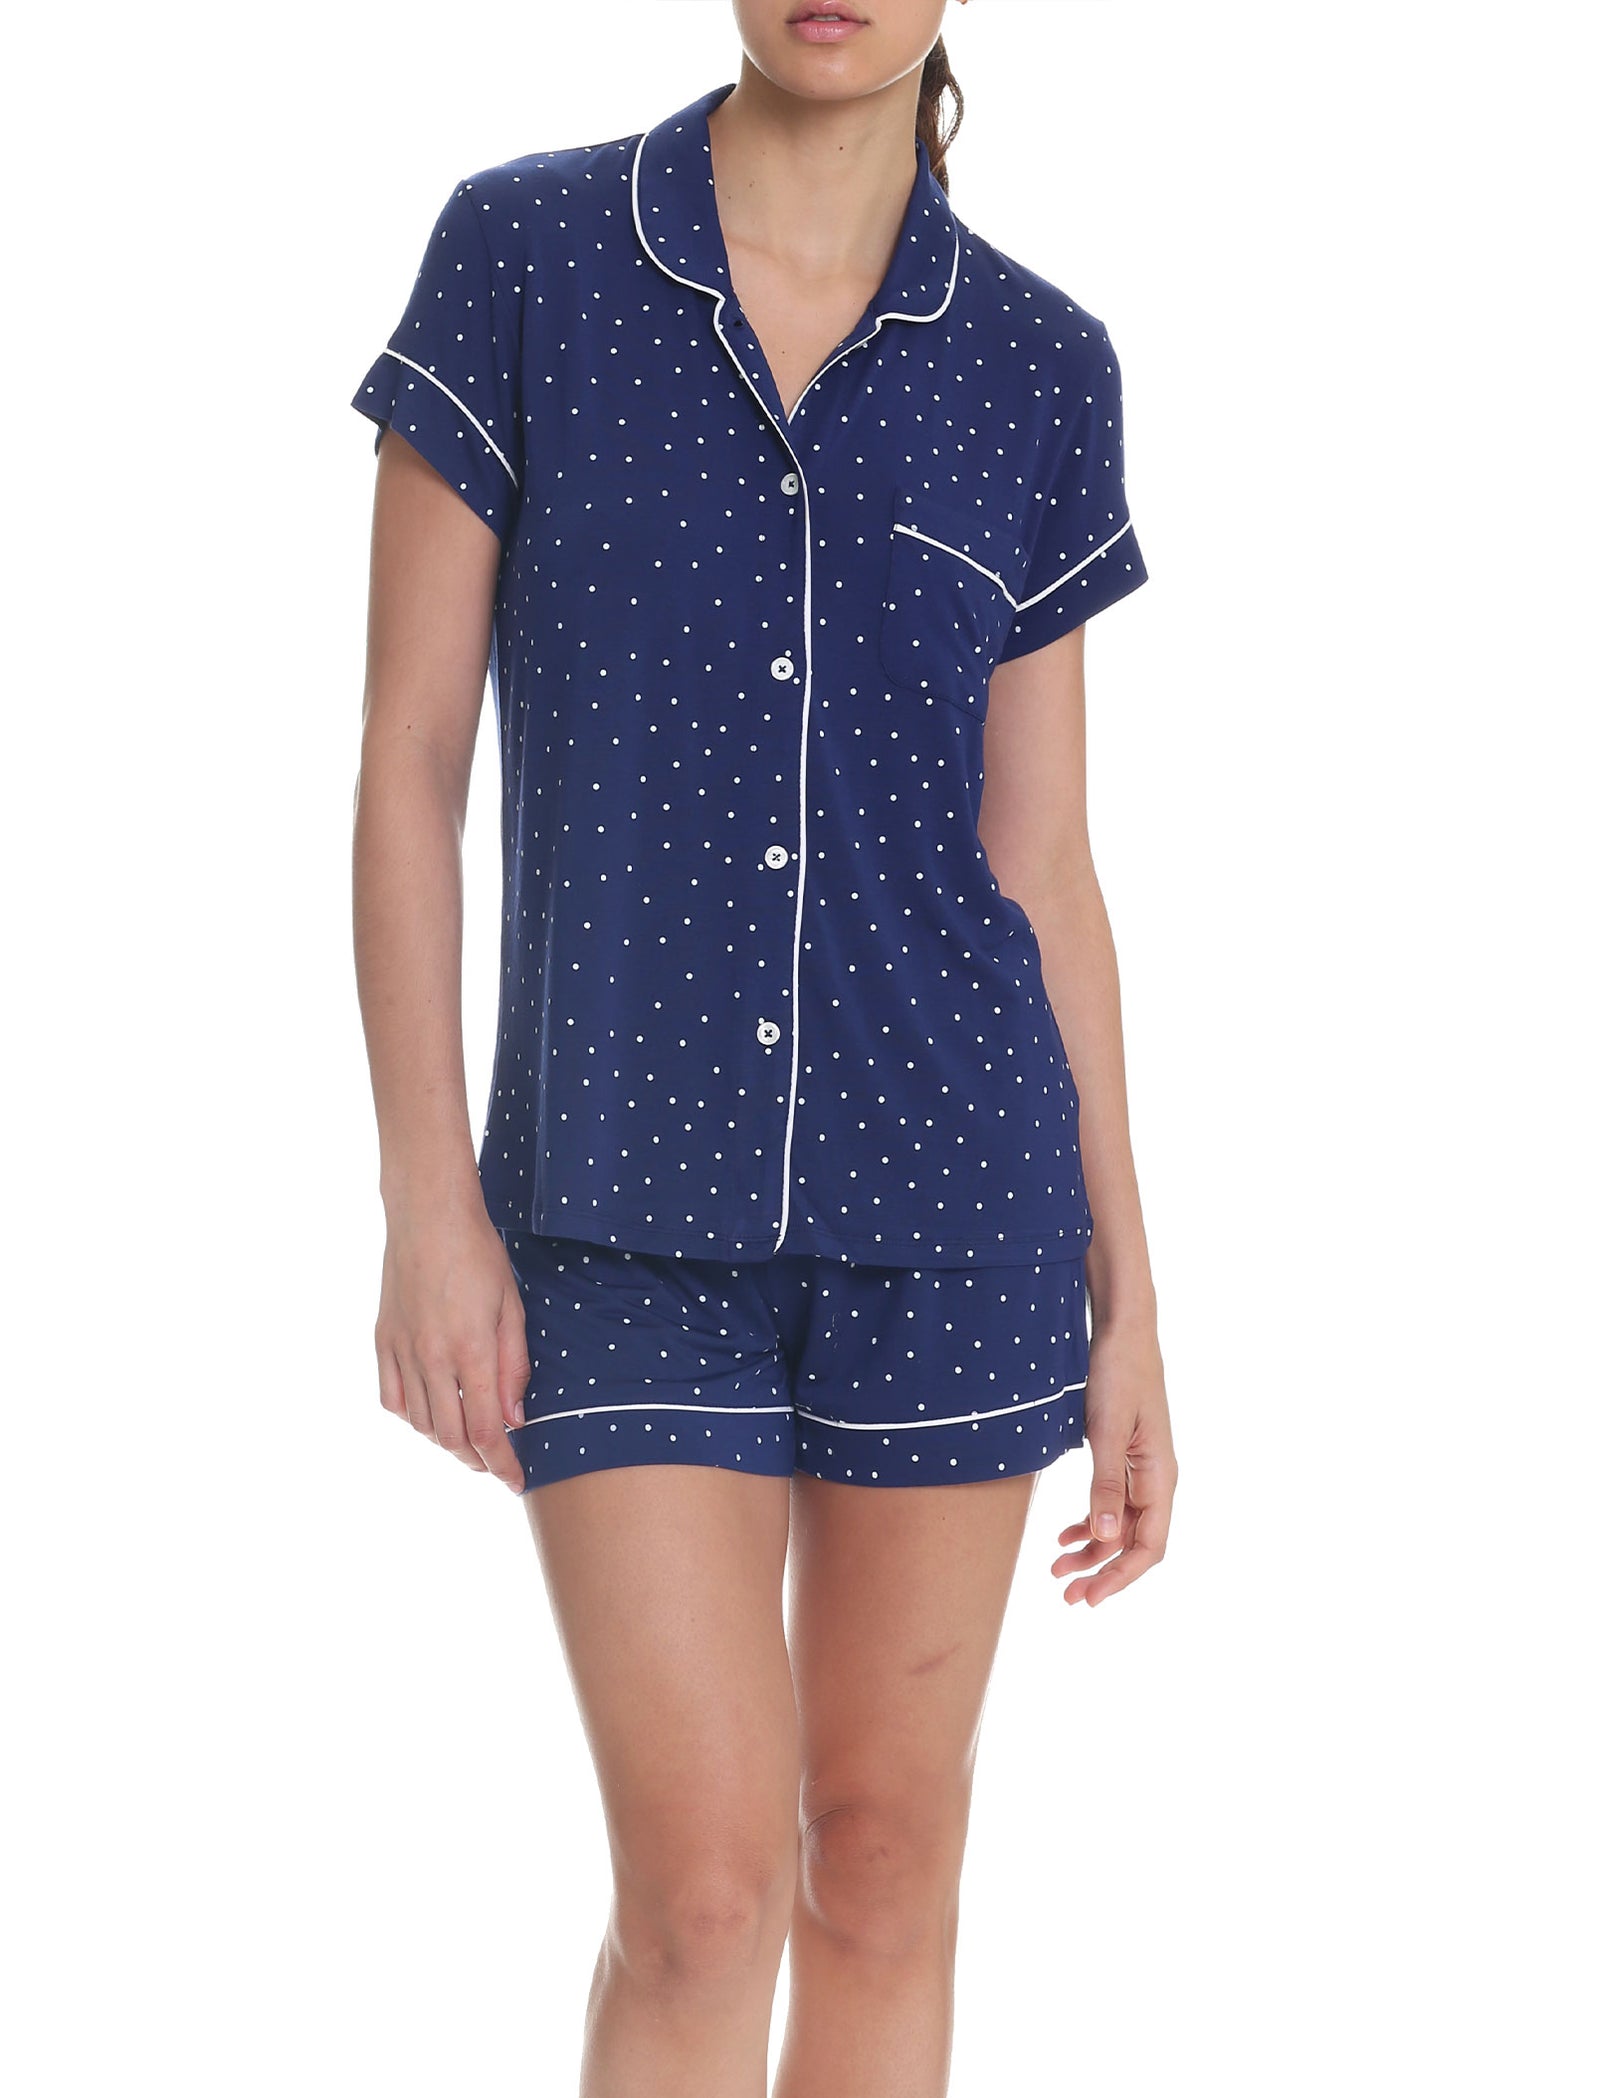 Papinelle Sleepwear | Sale | Beautiful Australian Sleepwear - Papinelle ...